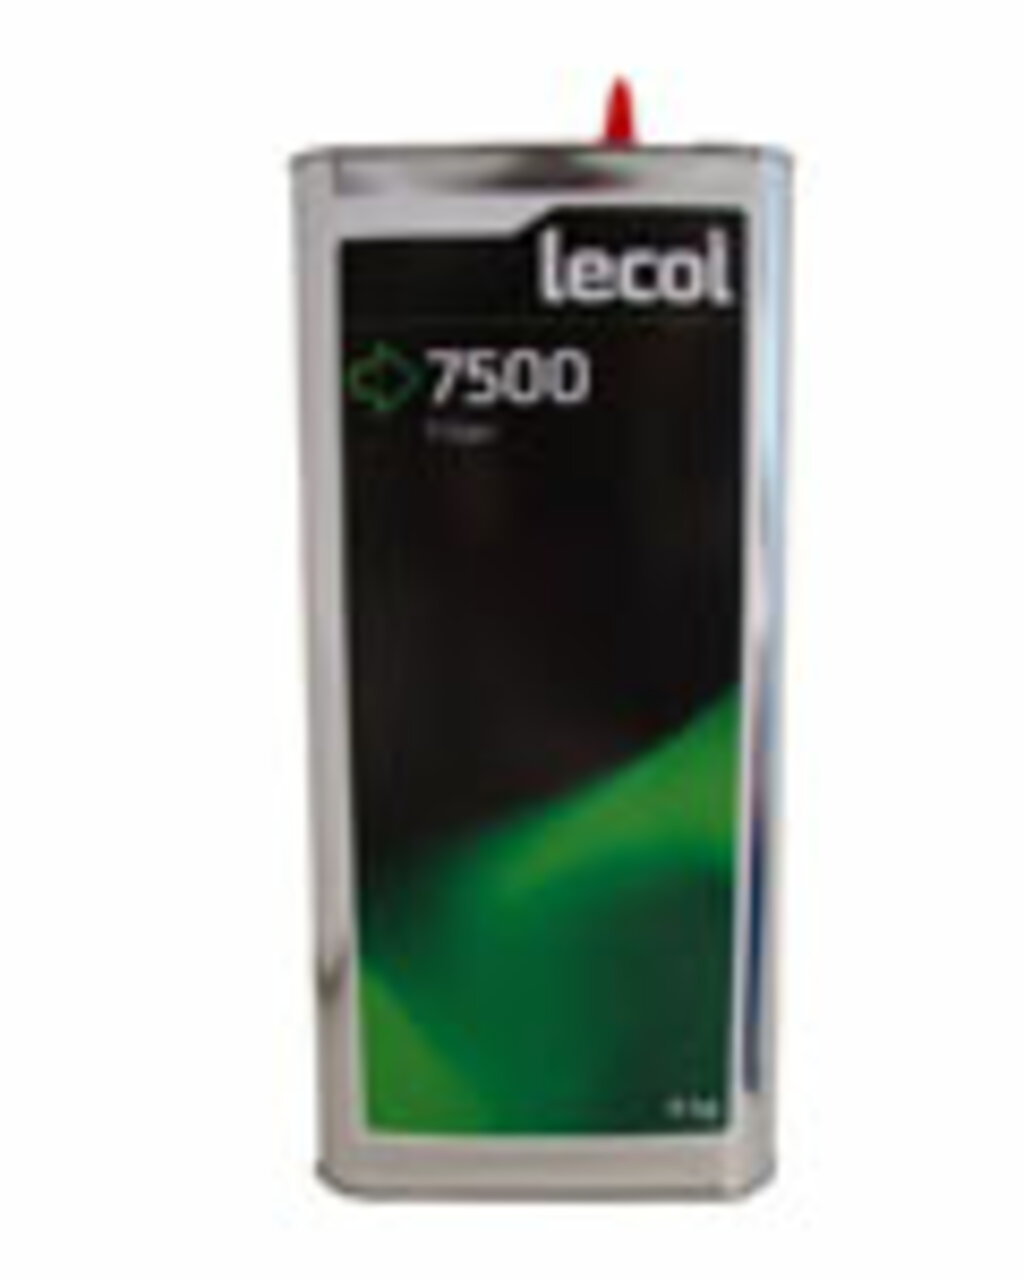 Lecol Resin Joint Wood Floor Filler 7500, 5kg